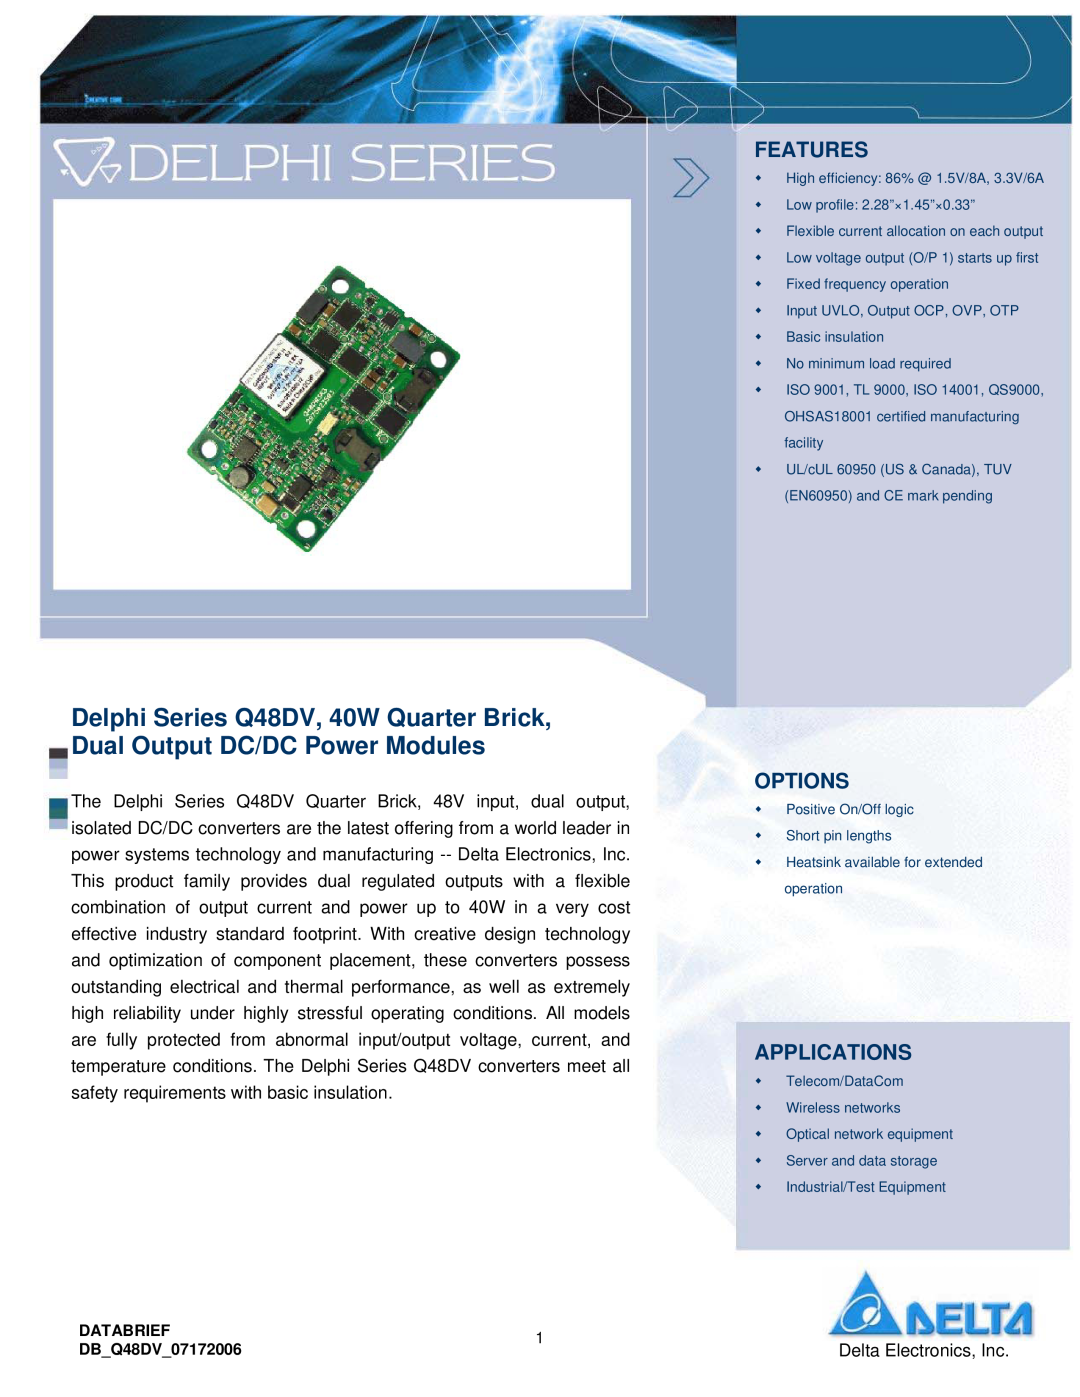 Delta Electronics Q48DV manual Features, Options, Applications, Delta Electronics, Inc 